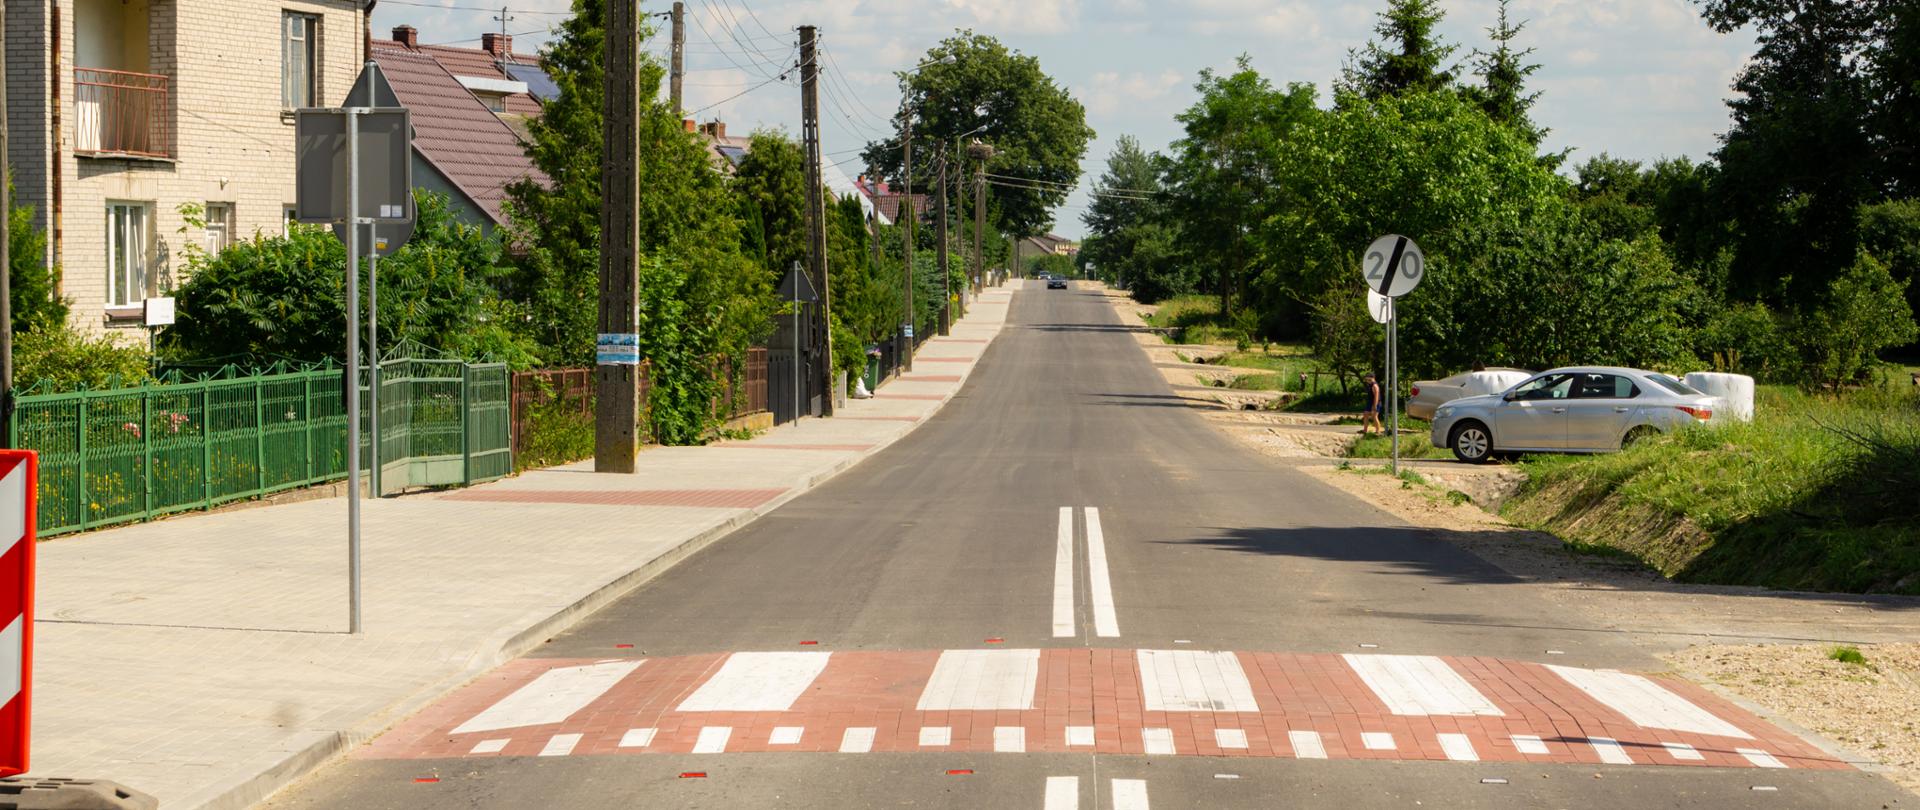 Nowy asfalt w Kędziorowie - kolejna droga wyremontowana dzięki rządowemu wsparciu